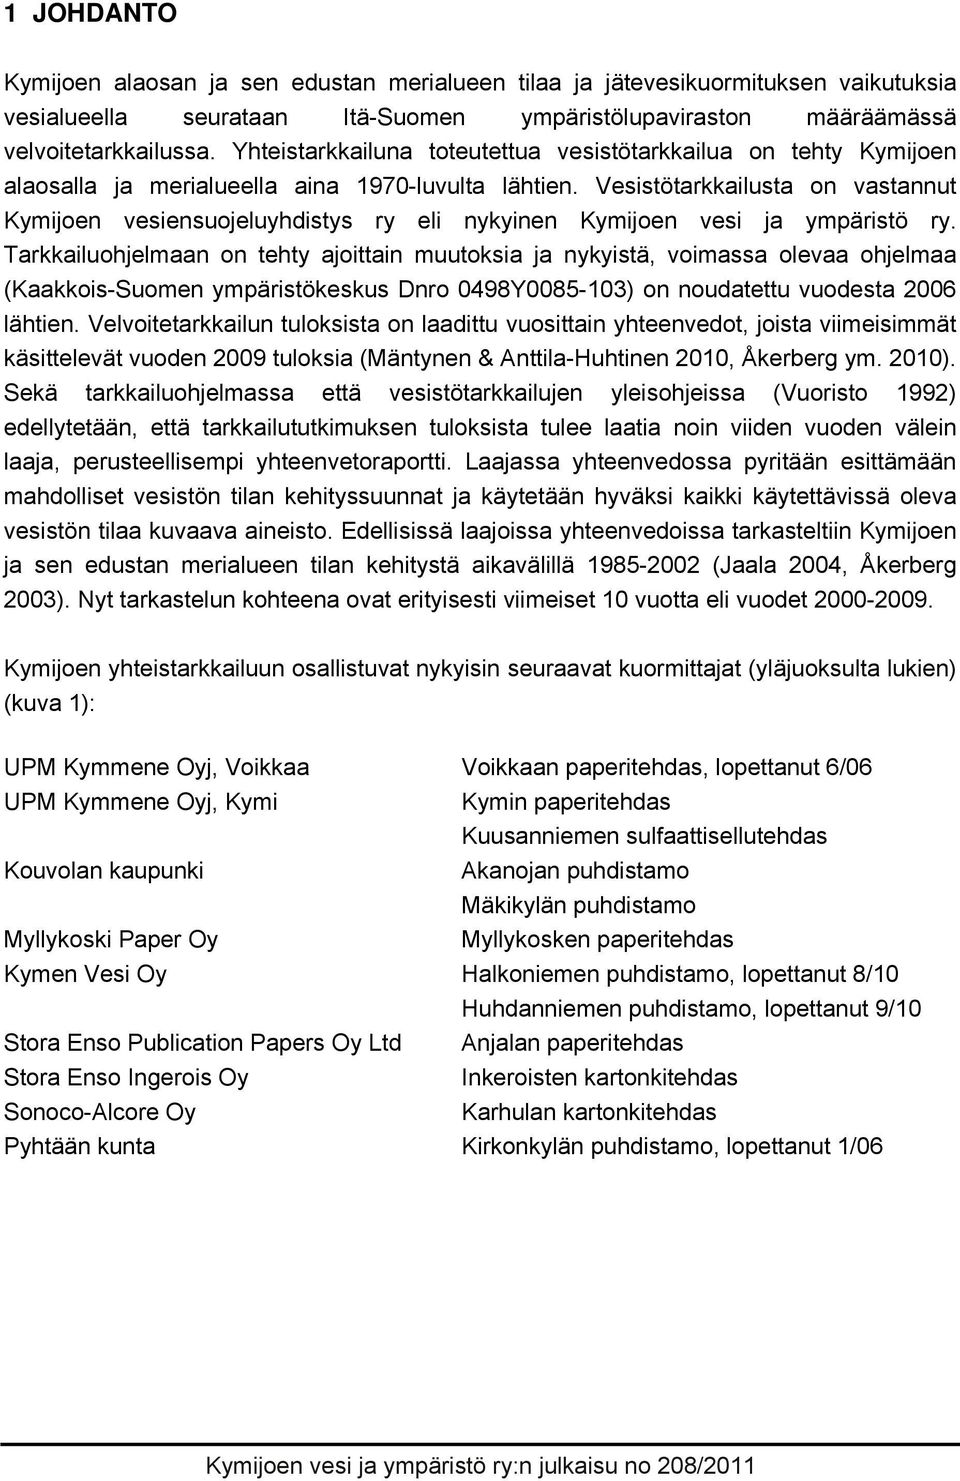 Vesistötarkkailusta on vastannut Kymijoen vesiensuojeluyhdistys ry eli nykyinen Kymijoen vesi ja ympäristö ry.